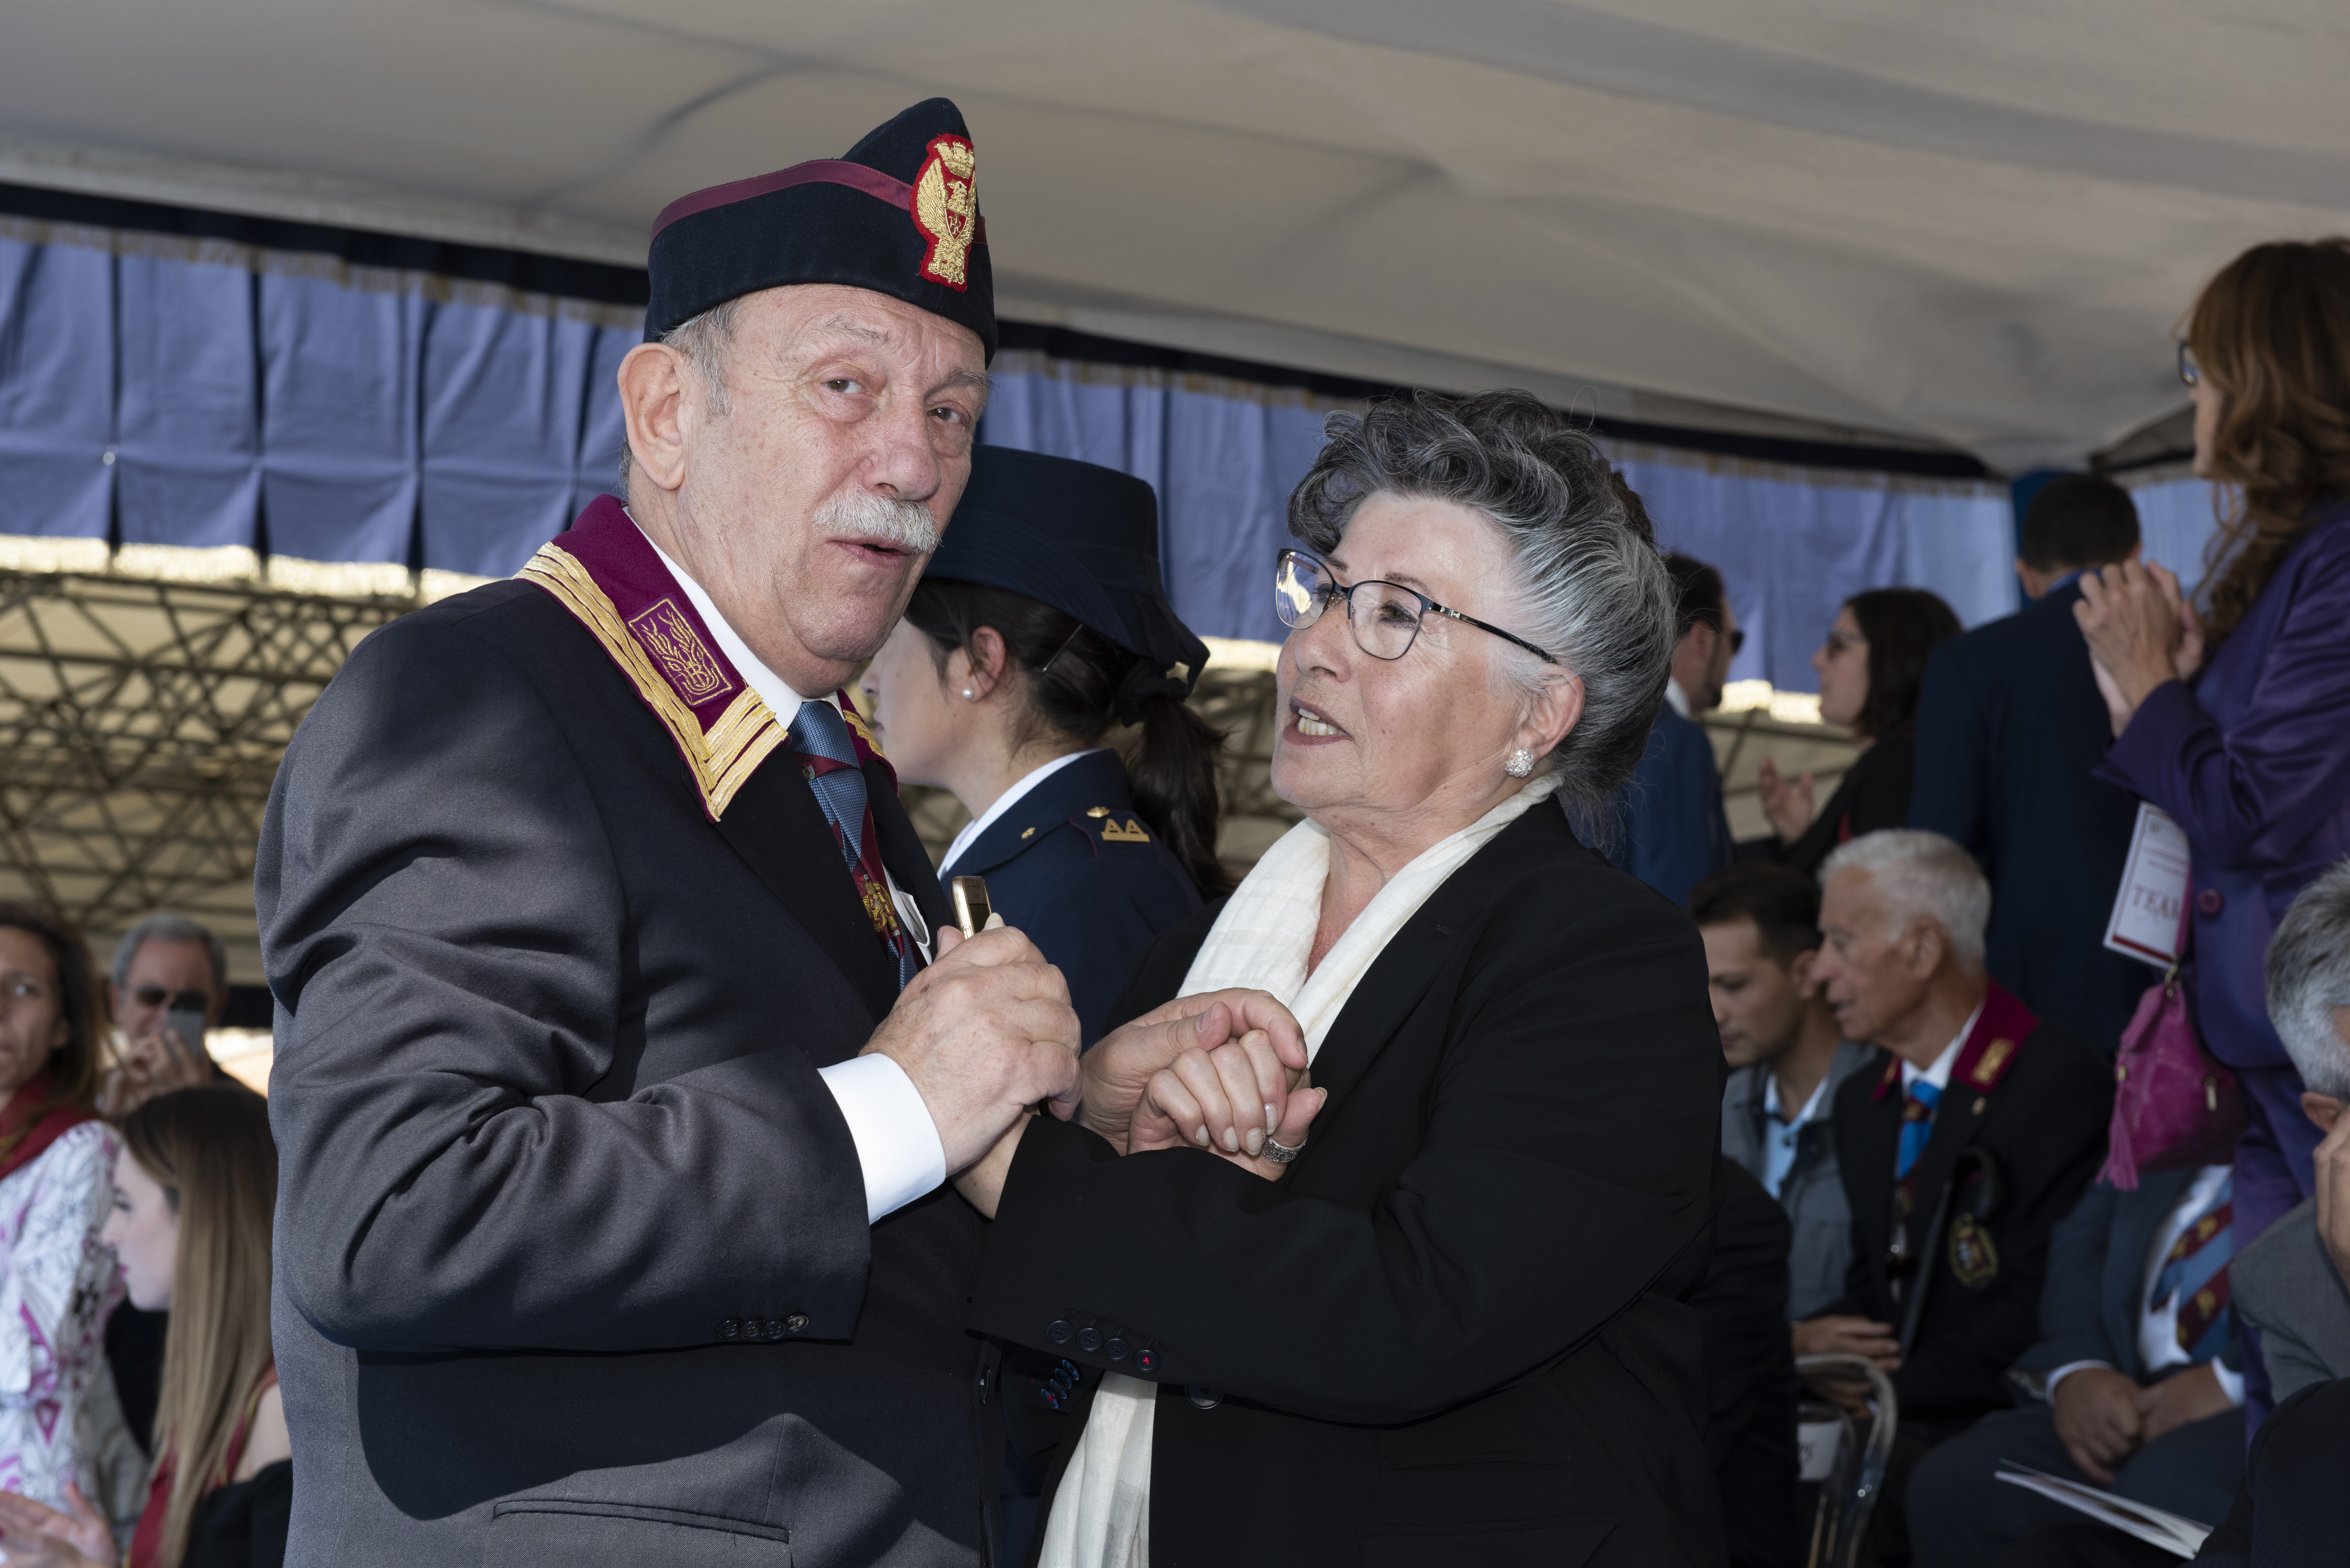 La cerimonia a Ostia per il 50° anniversario dell’Anps - Gli ospiti e le autorità